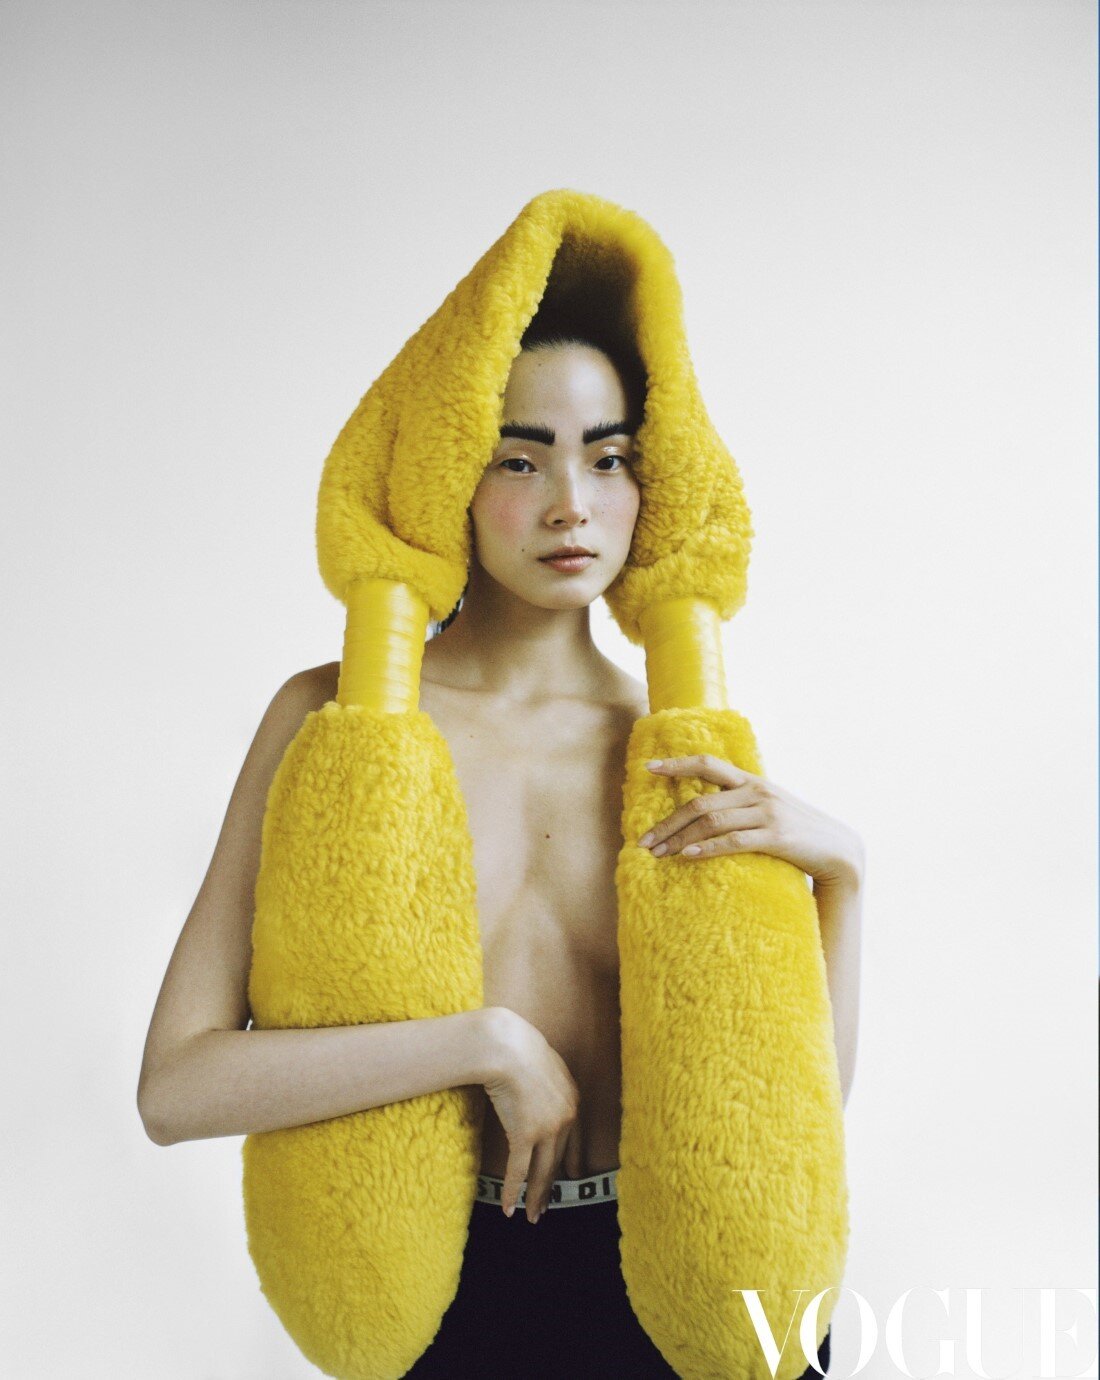 Xiao Wen Ju by Leslie Zhang Vogue China Jan 2021 (19).jpg